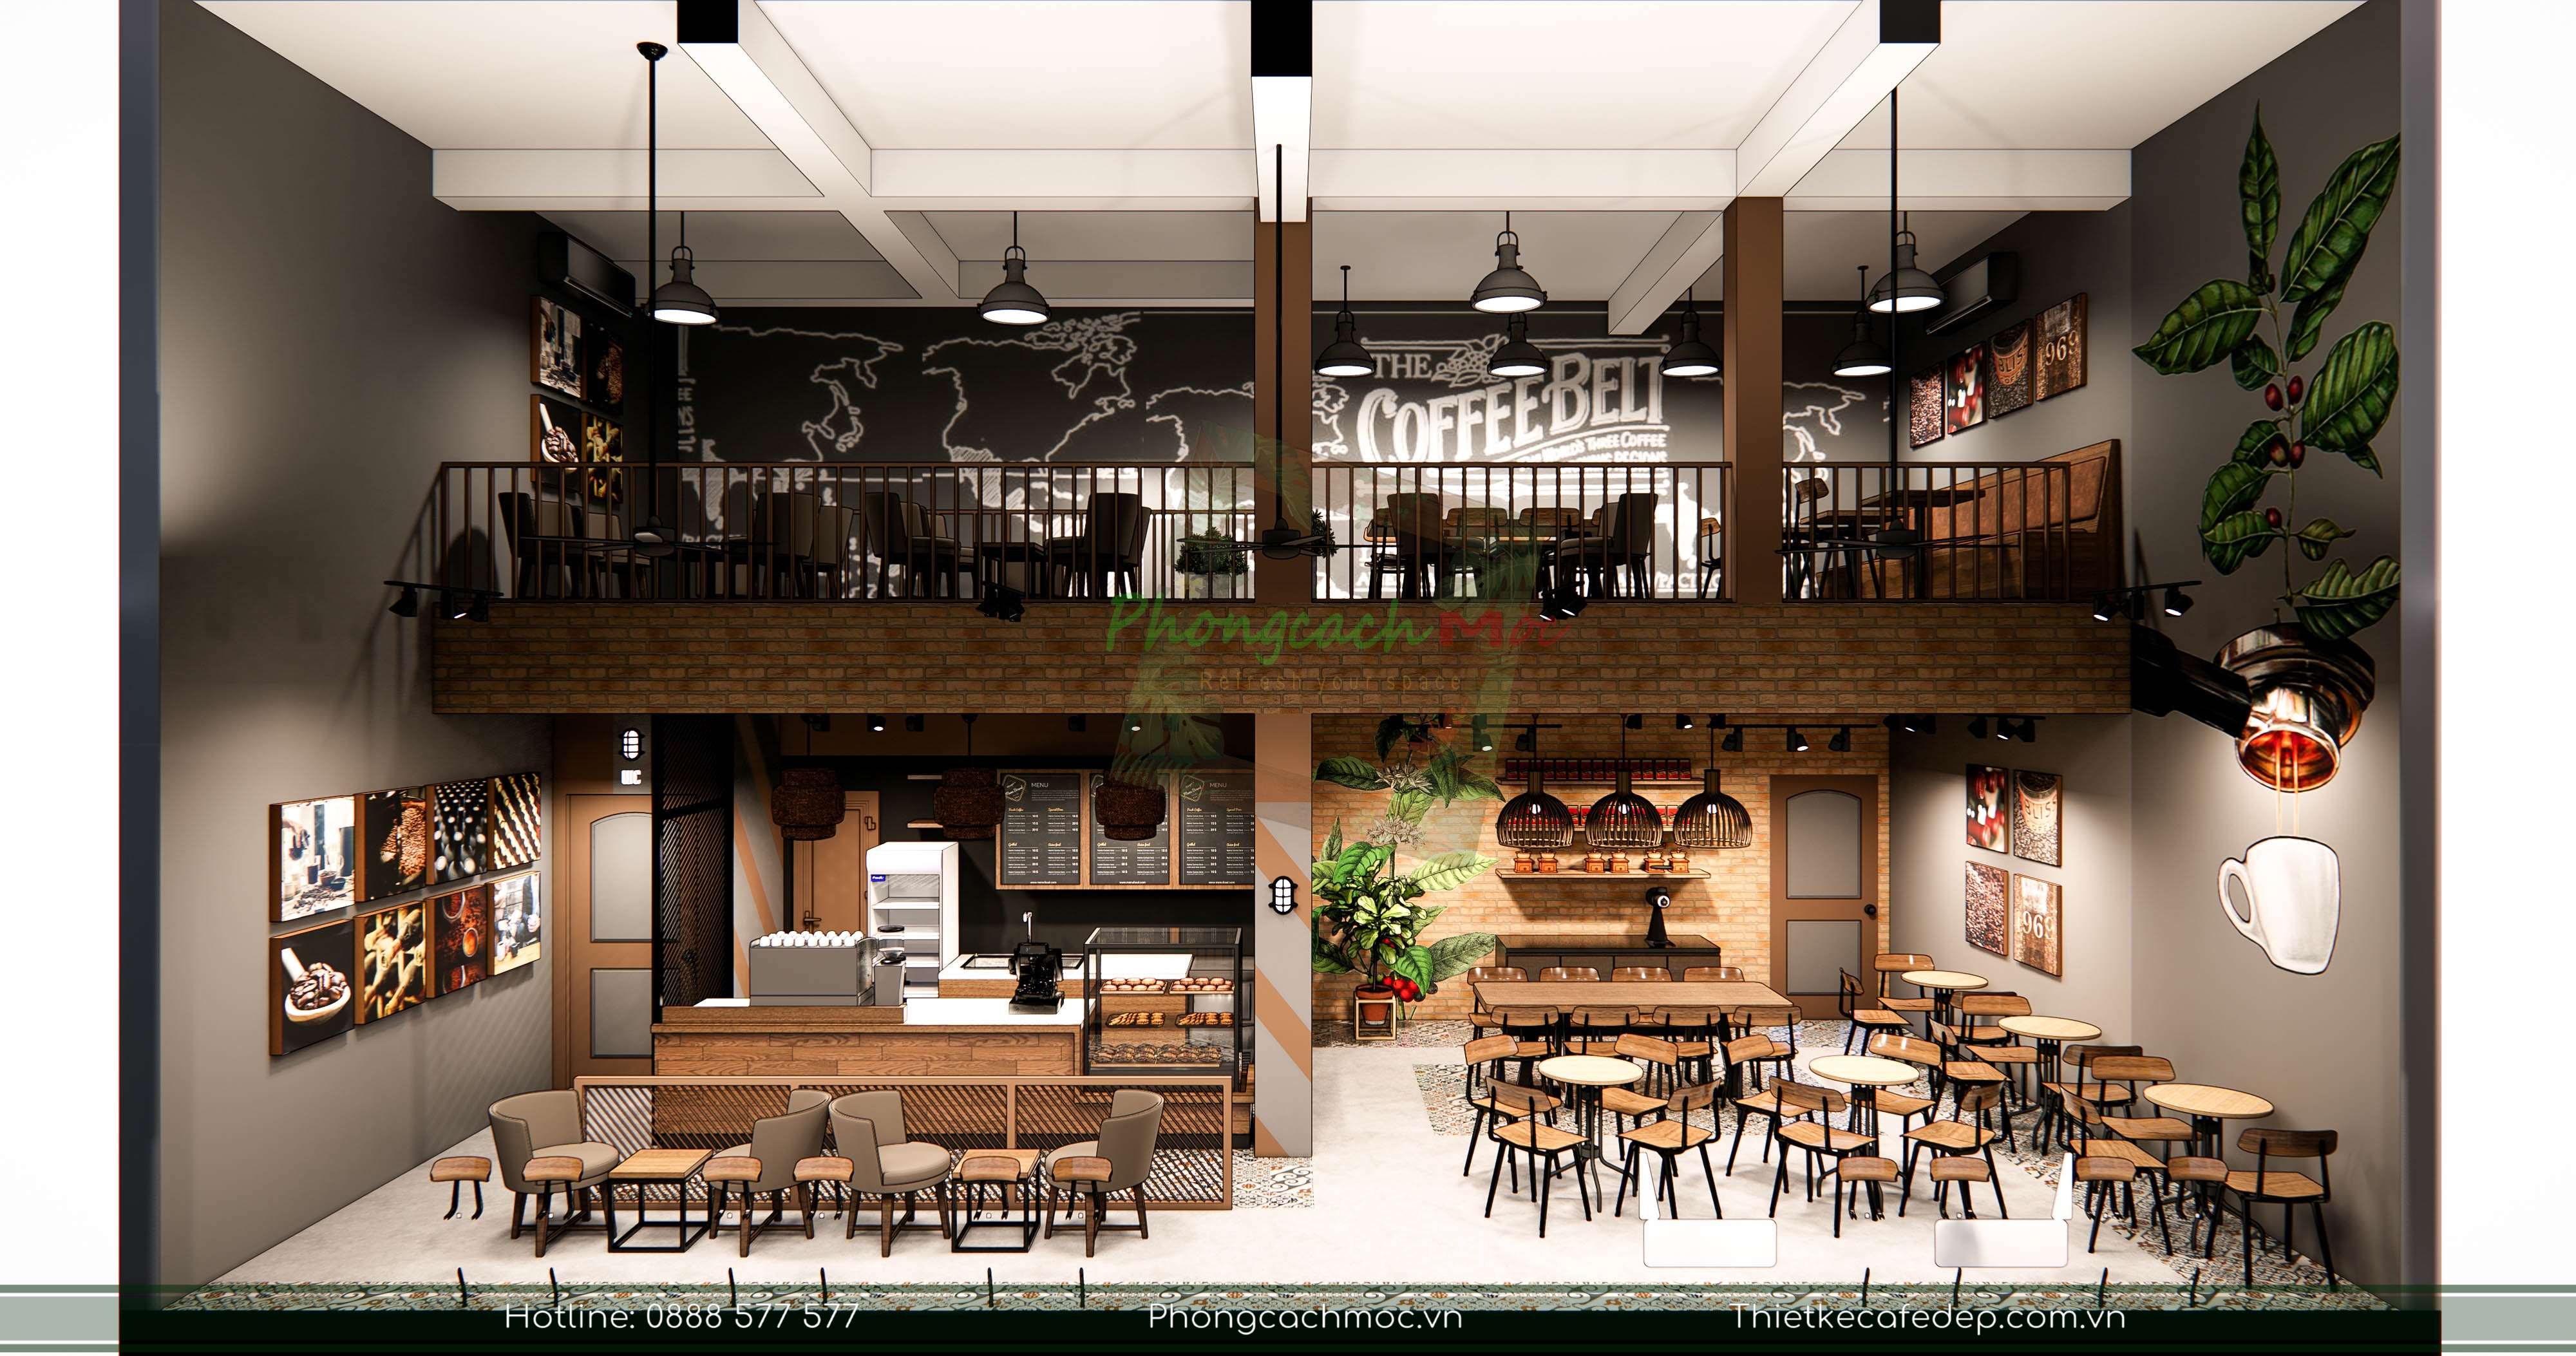 Thiết kế quán cafe Nguyên Bảo - Phong cách Vintage với không gian mở